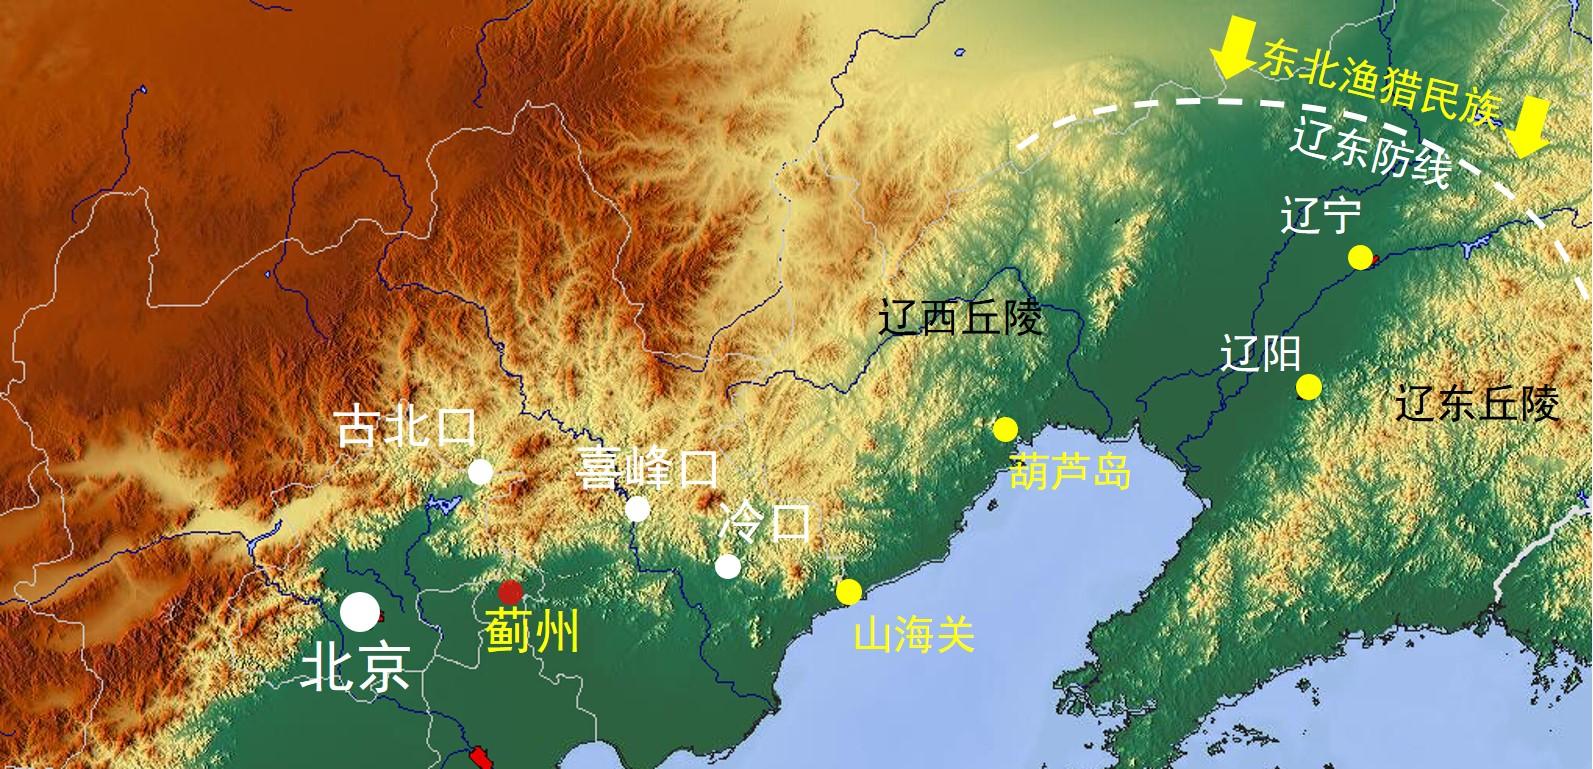 明朝是不是只有迁都北京,才能抵挡蒙古入侵?